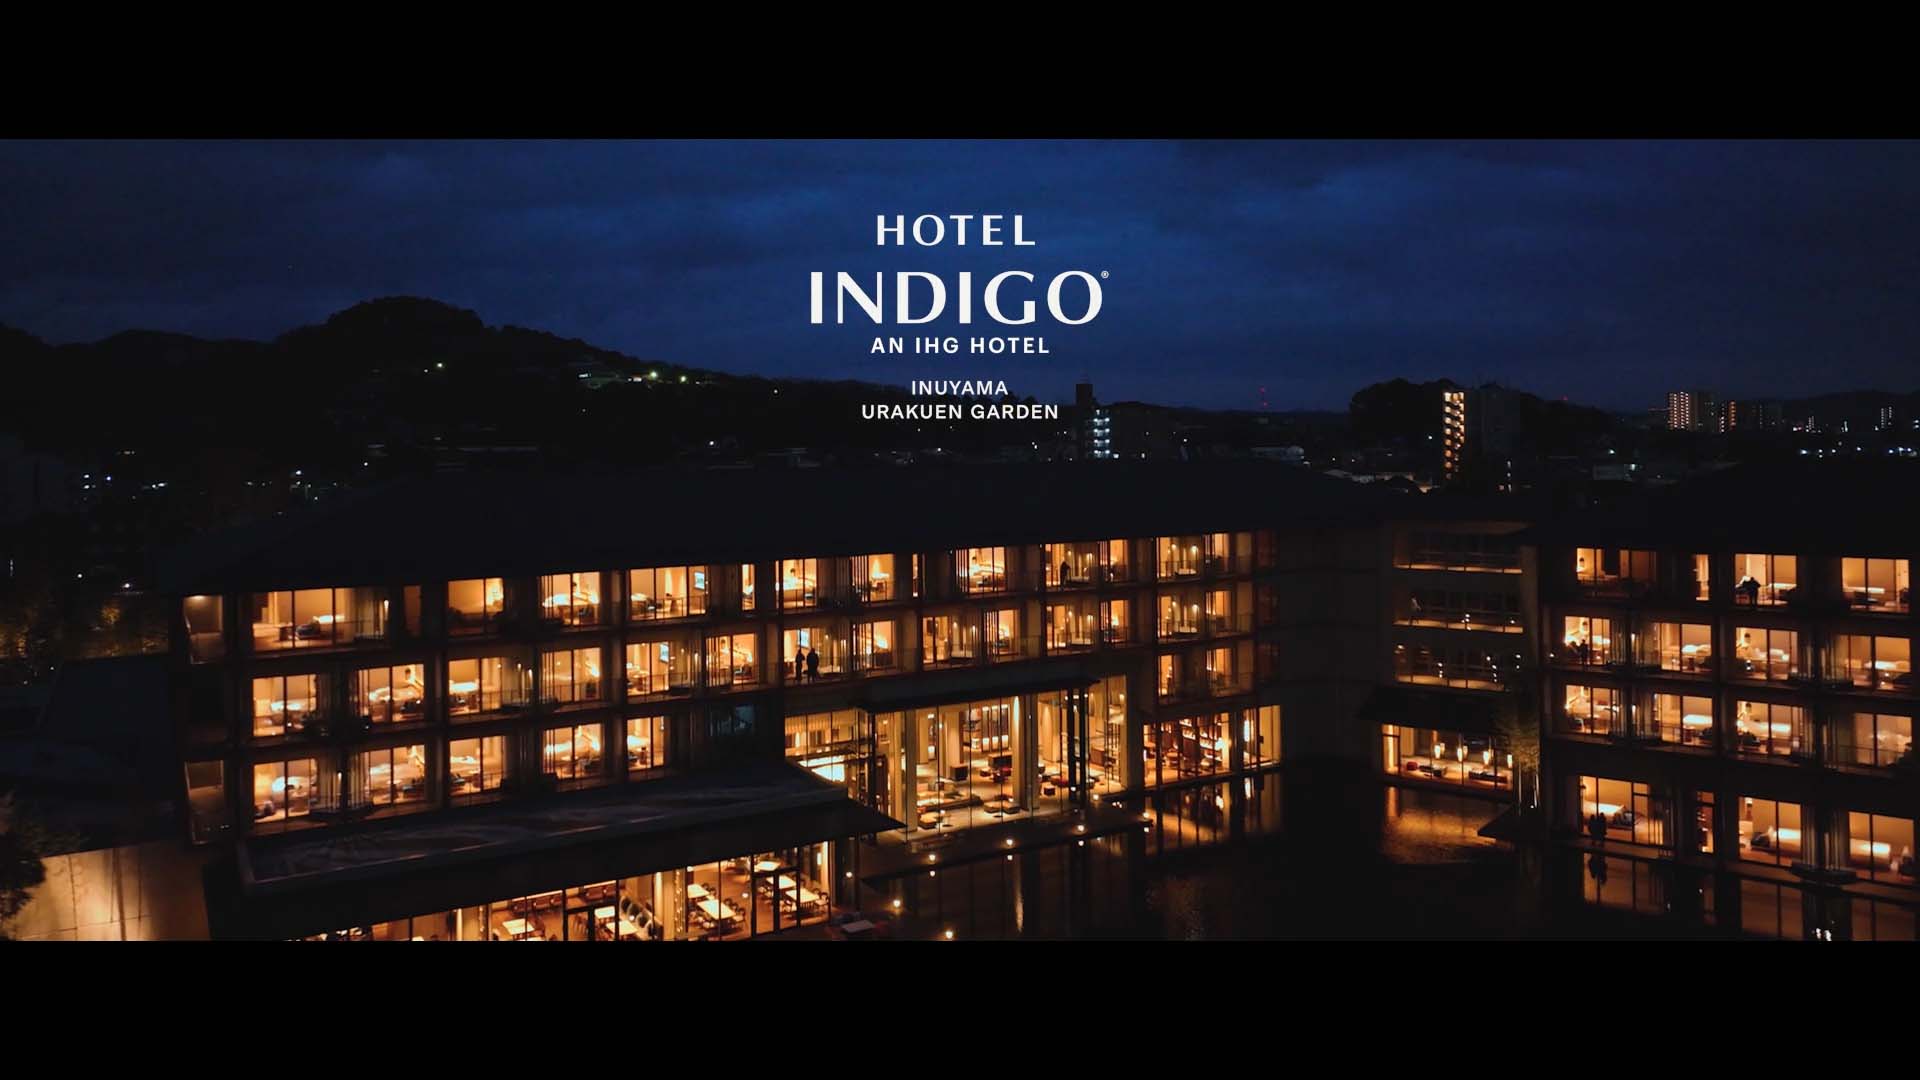 Hotel Indigo Inuyama Urakuen Garden | INSPIRE NEW STORIES.